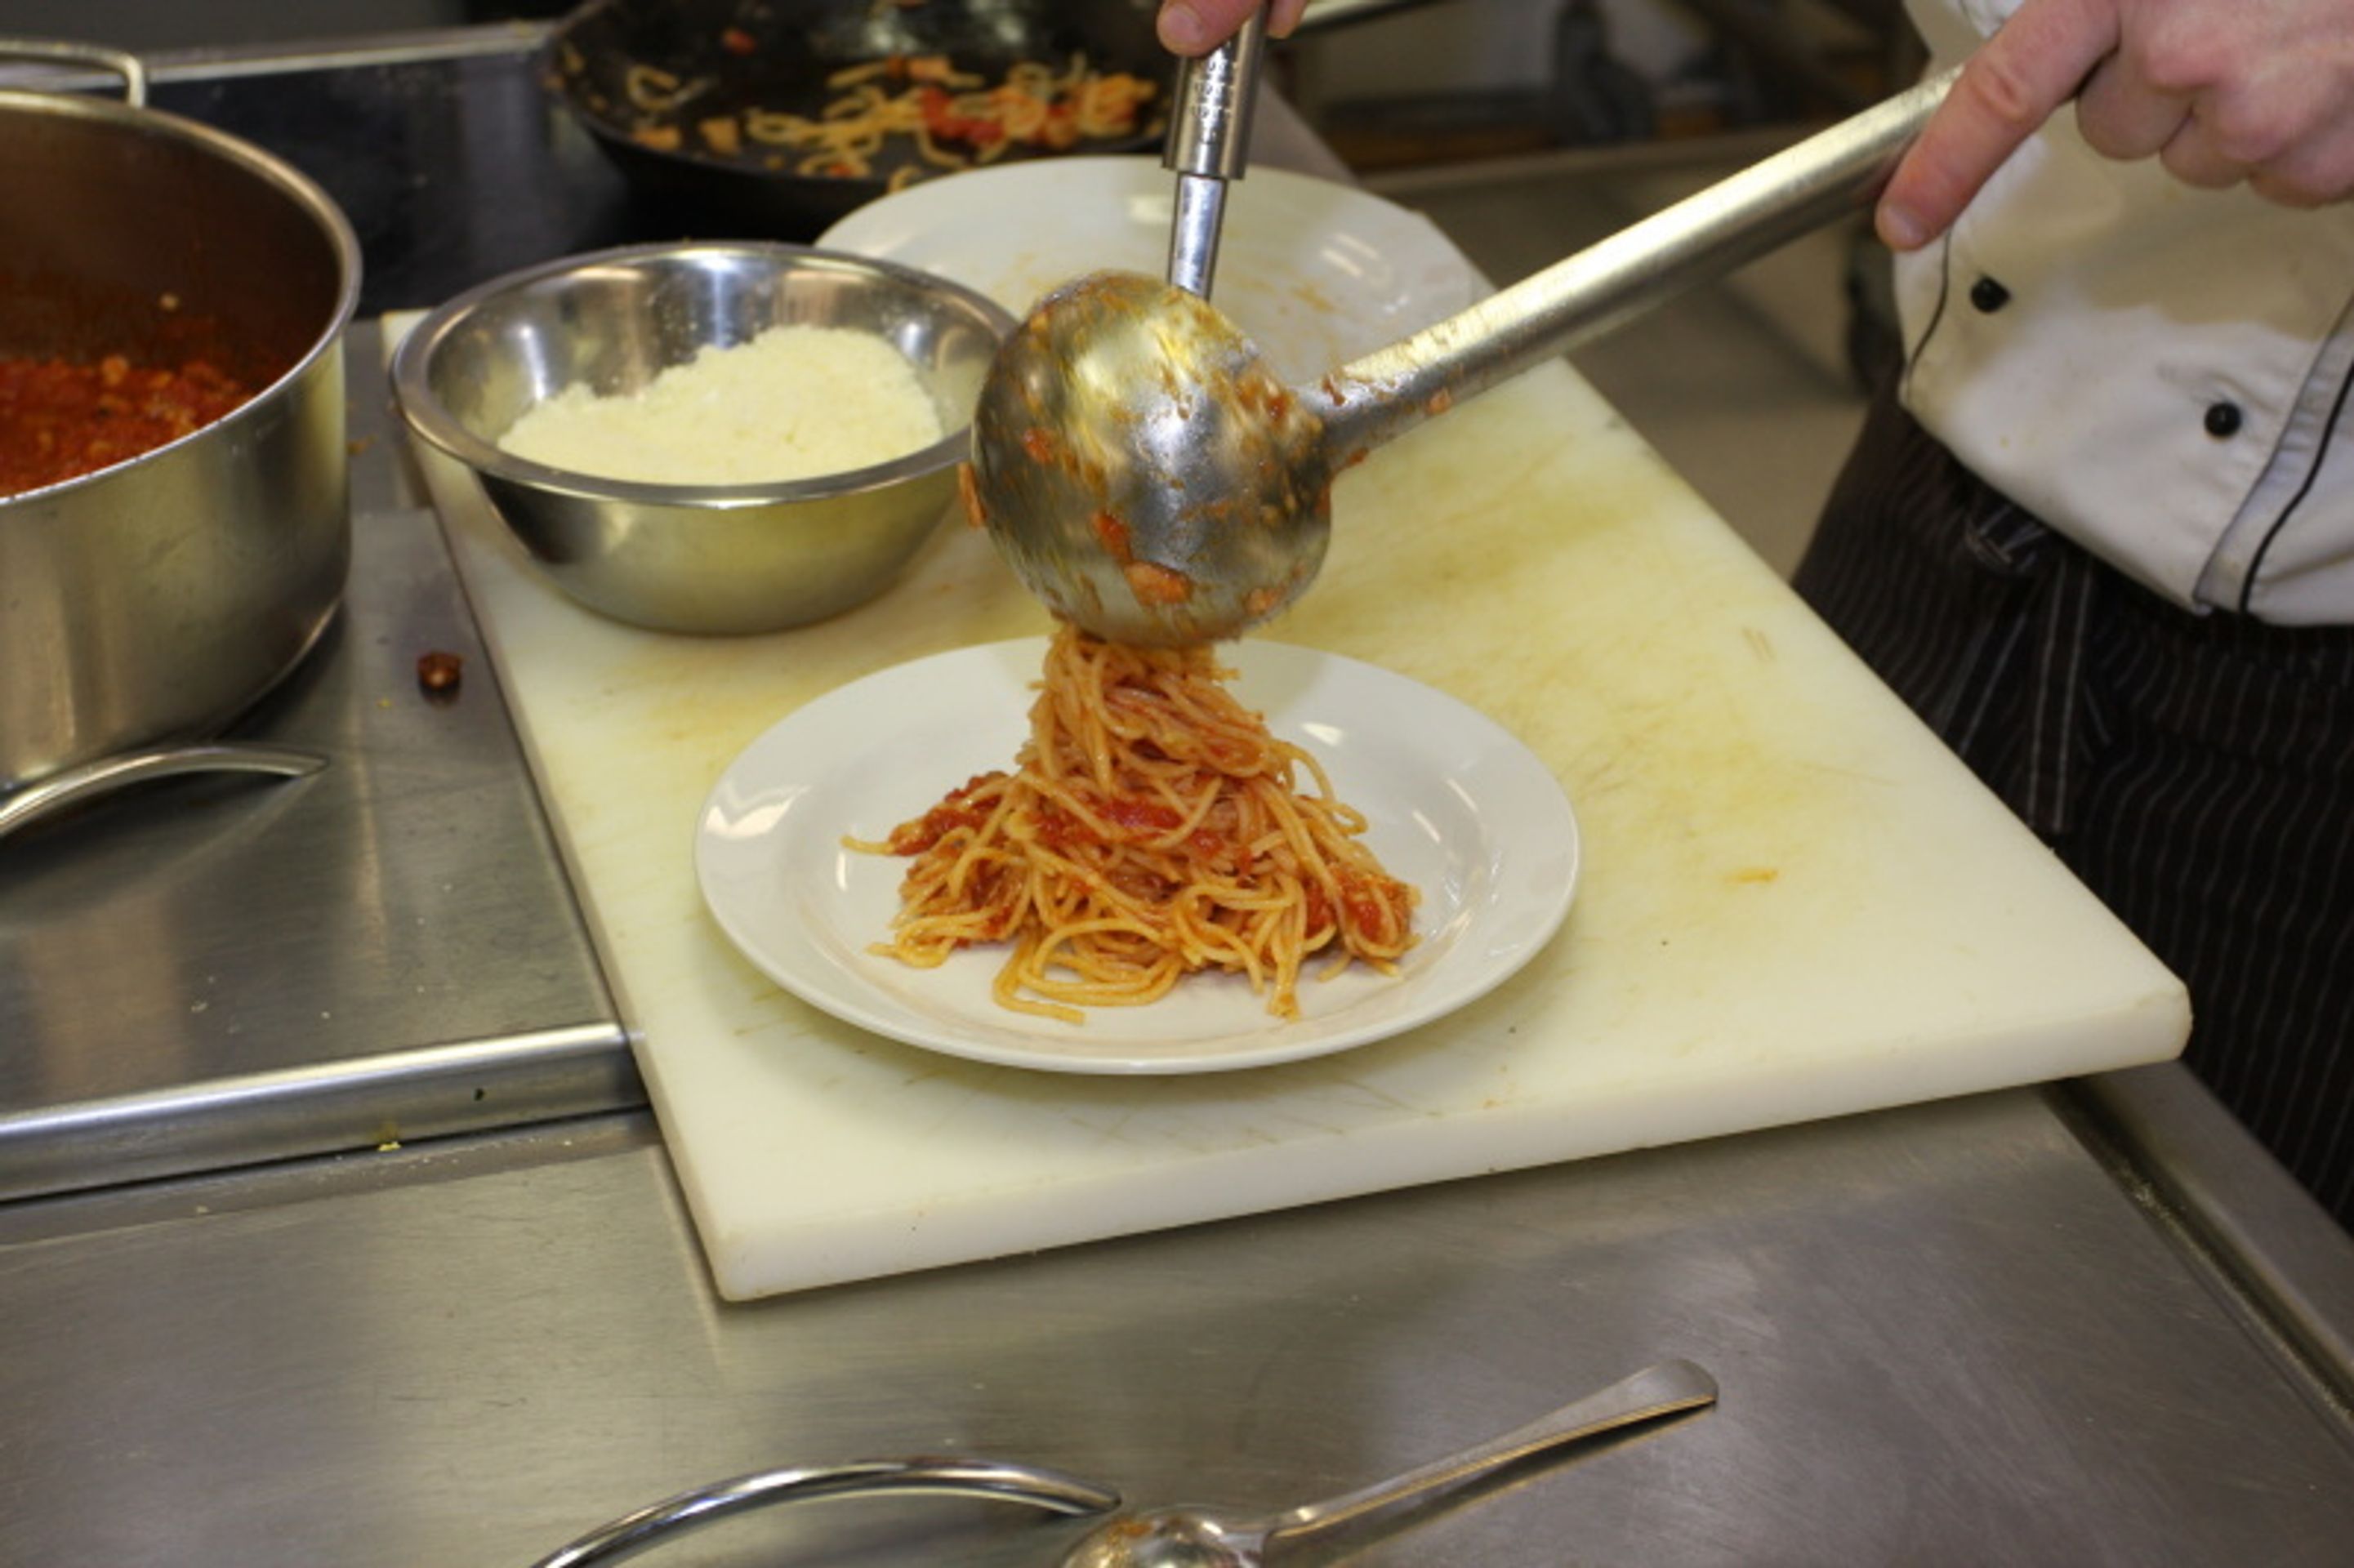 Testování těstovin s Luigim Valenzanem - 9 - GALERIE: Jak jsme testovali špagety s Luigim Valenzanem (8/16)